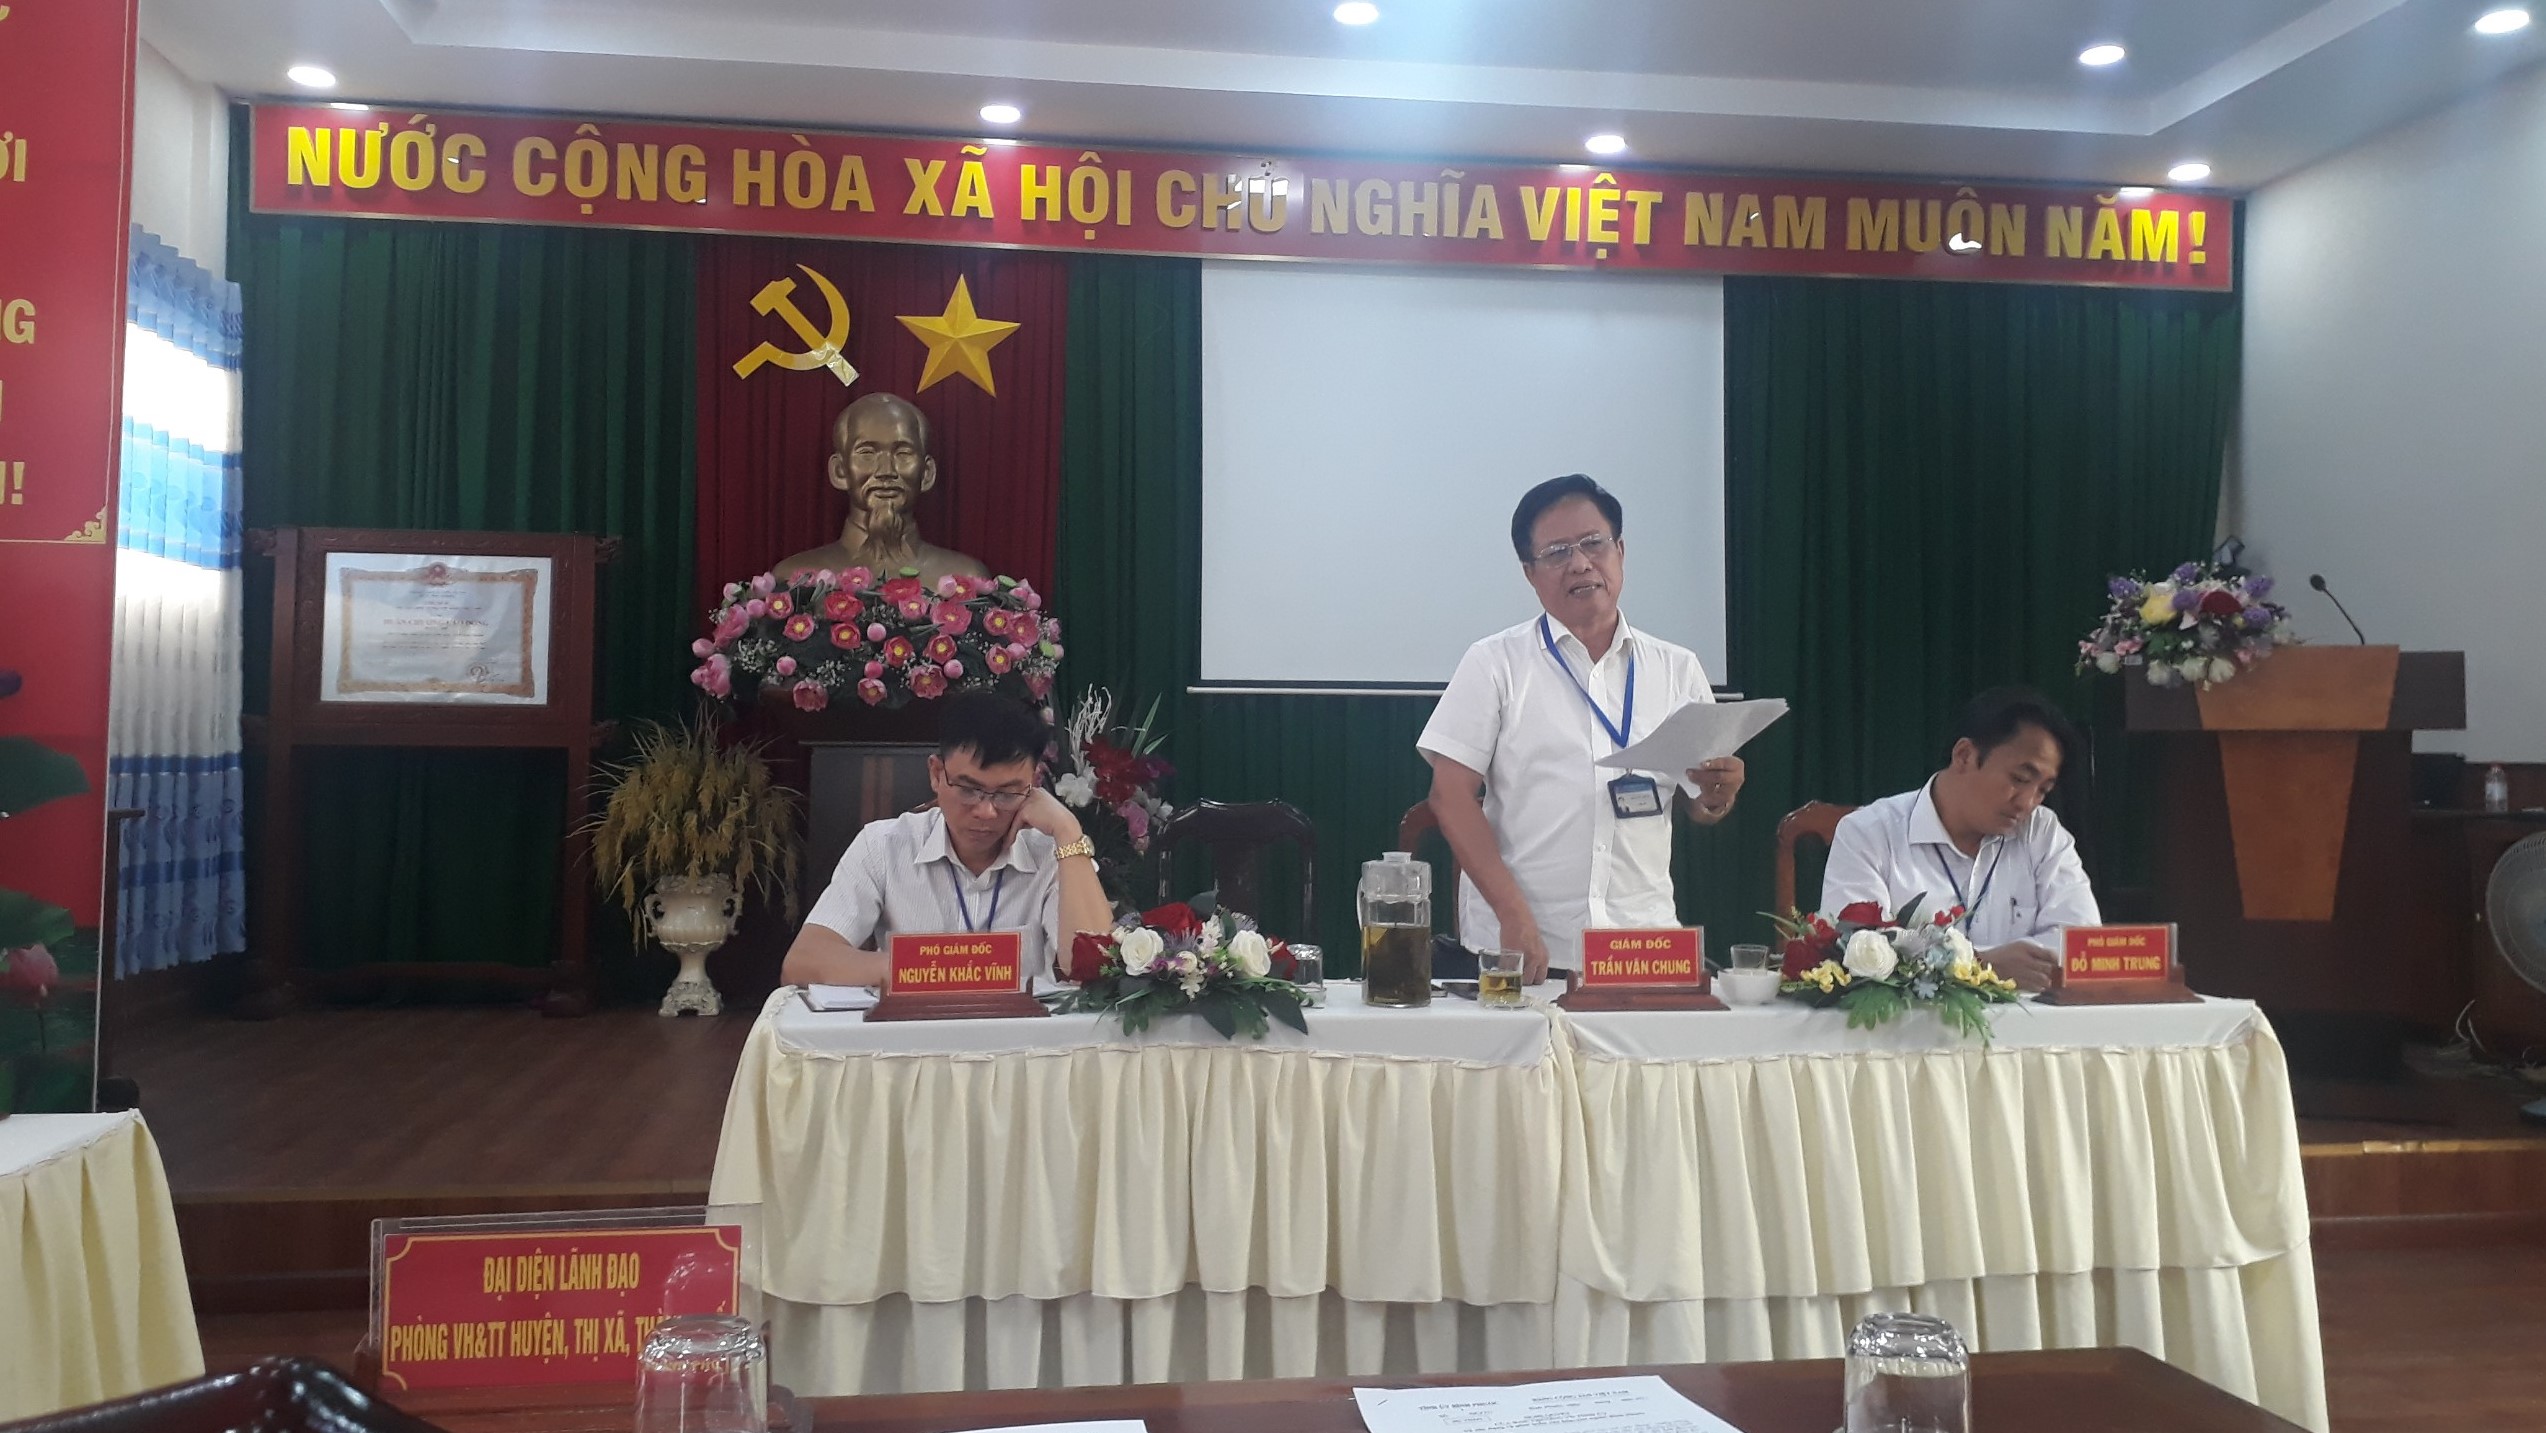 Đồng chí Trần Chung - Giám đốc Sở VH,TT&DL phát biểu tiếp thu và kết luận buổi họp góp ý dự thảo Nghị quyết